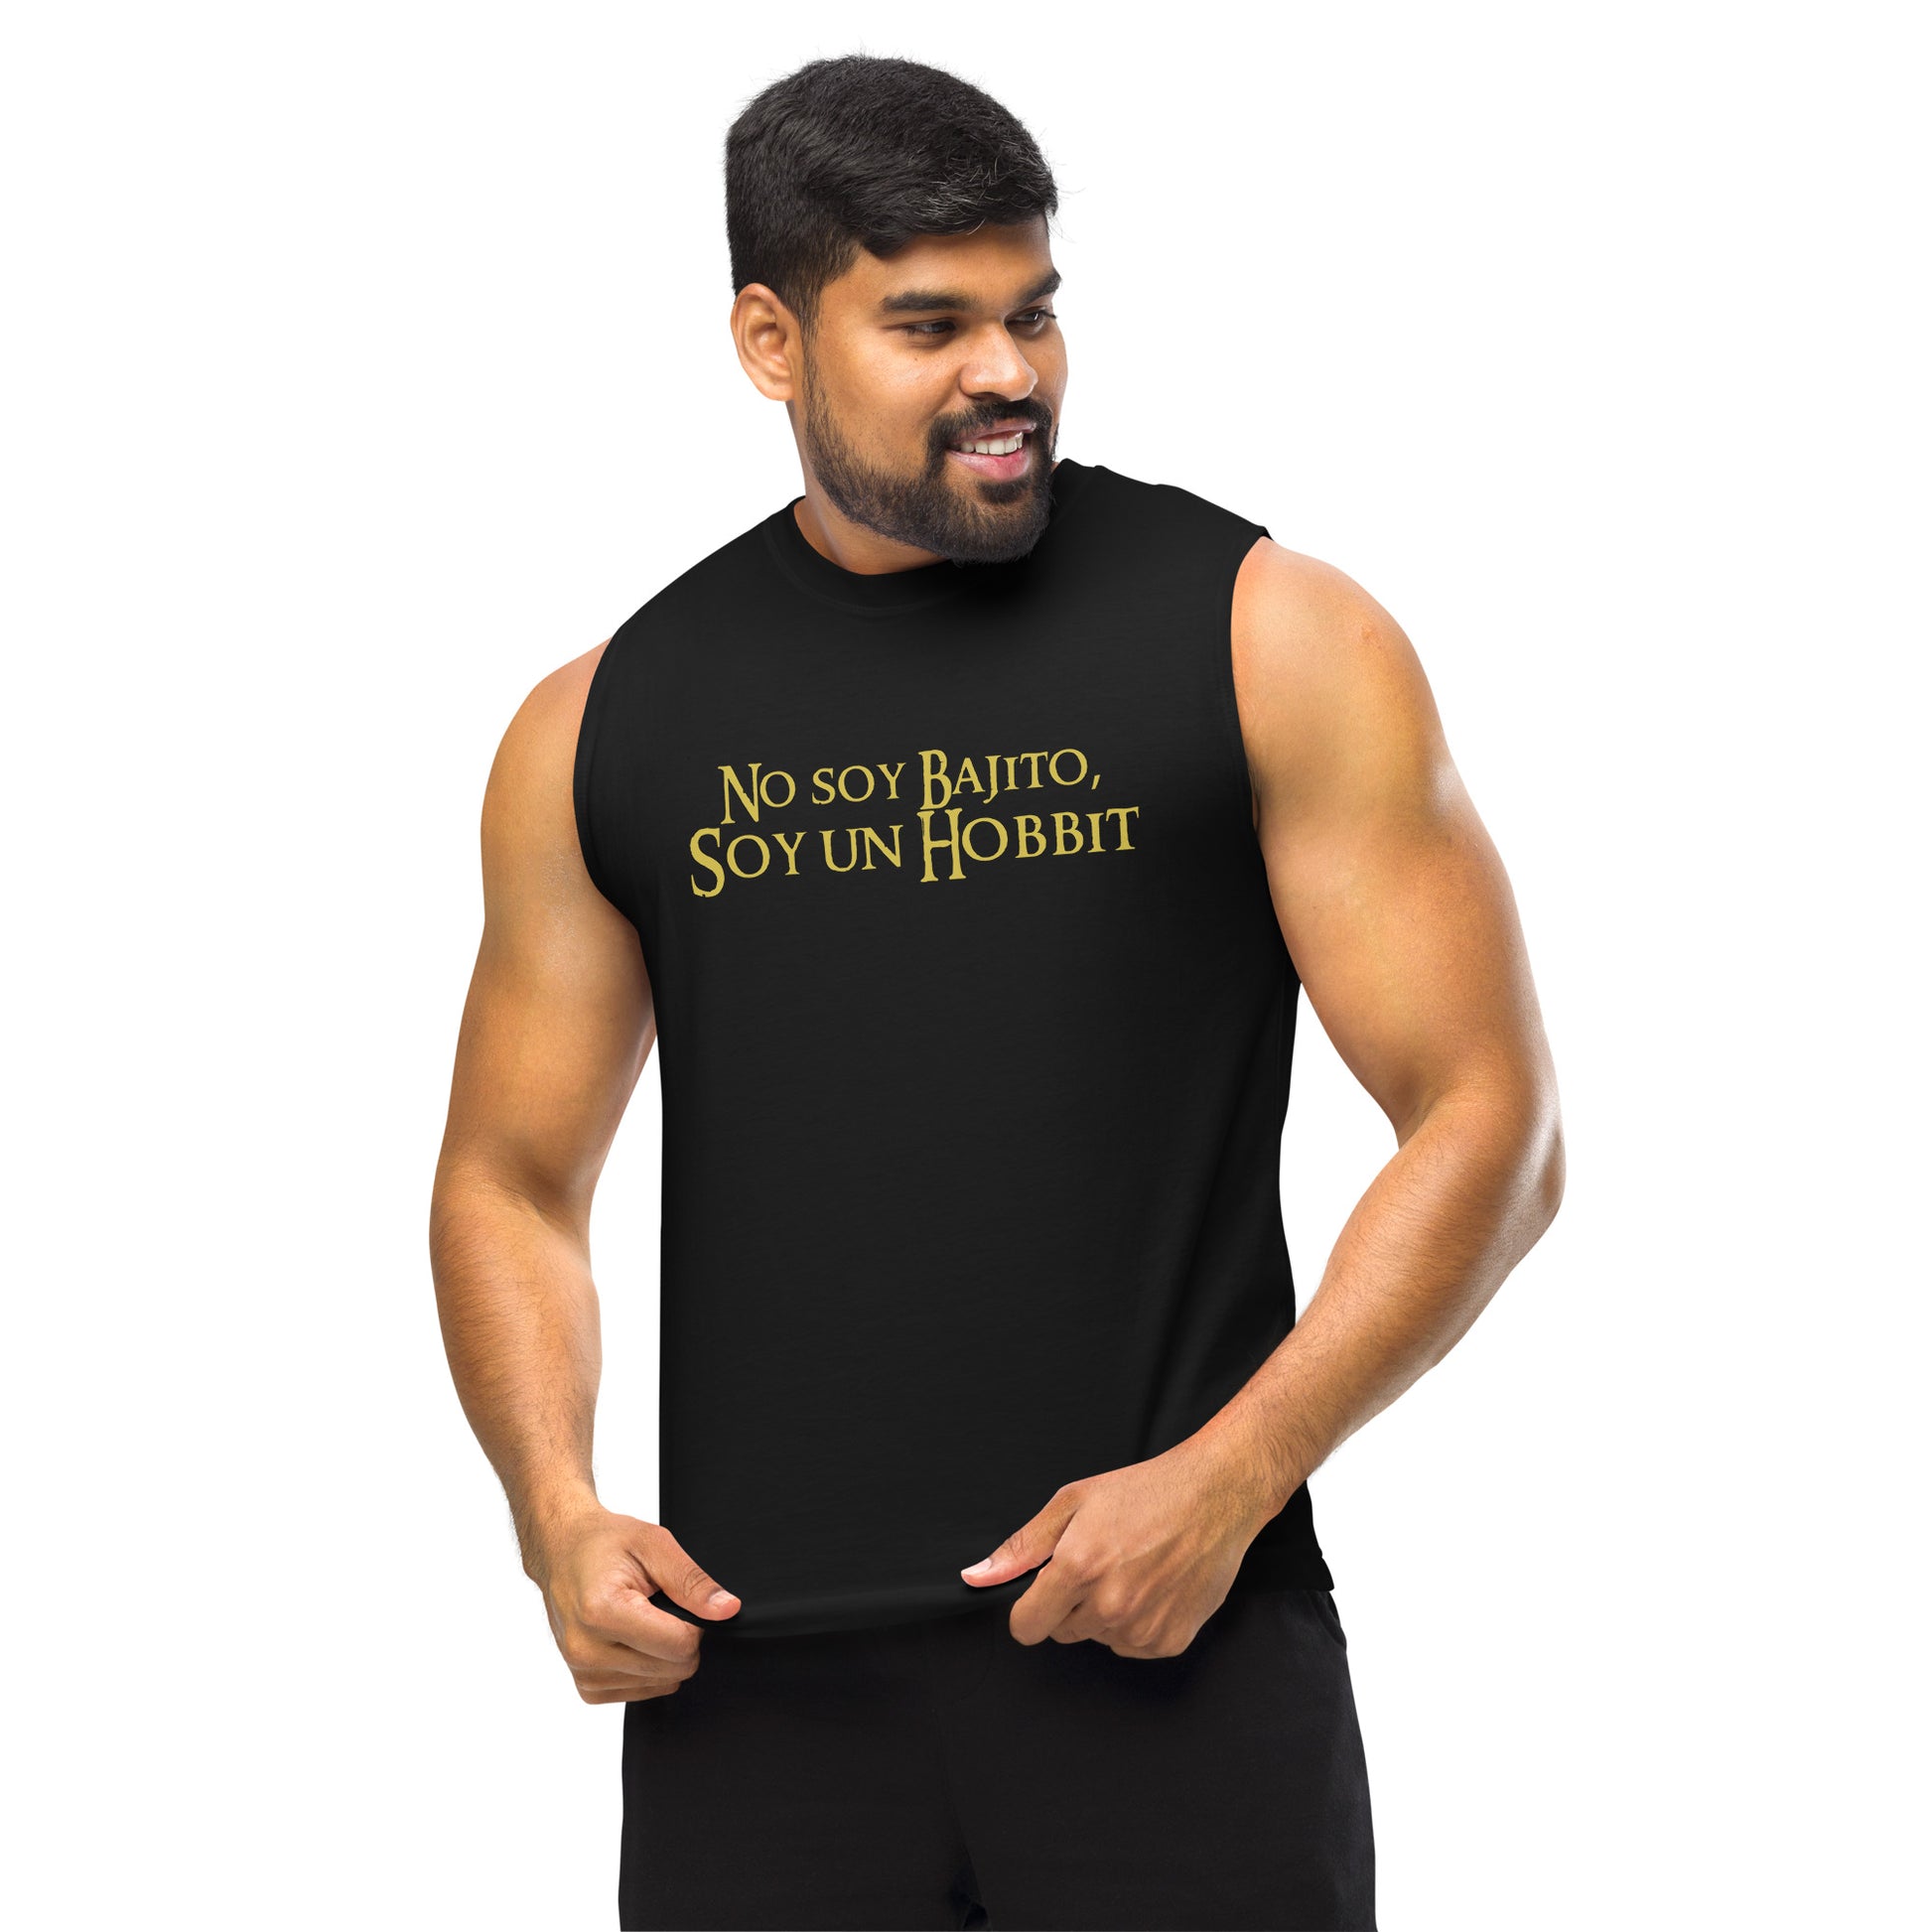 Camiseta sin mangas perfecta para entrenar, Camiseta No soy Bajito Gym comprala en línea y experimenta el mejor servicio al cliente.